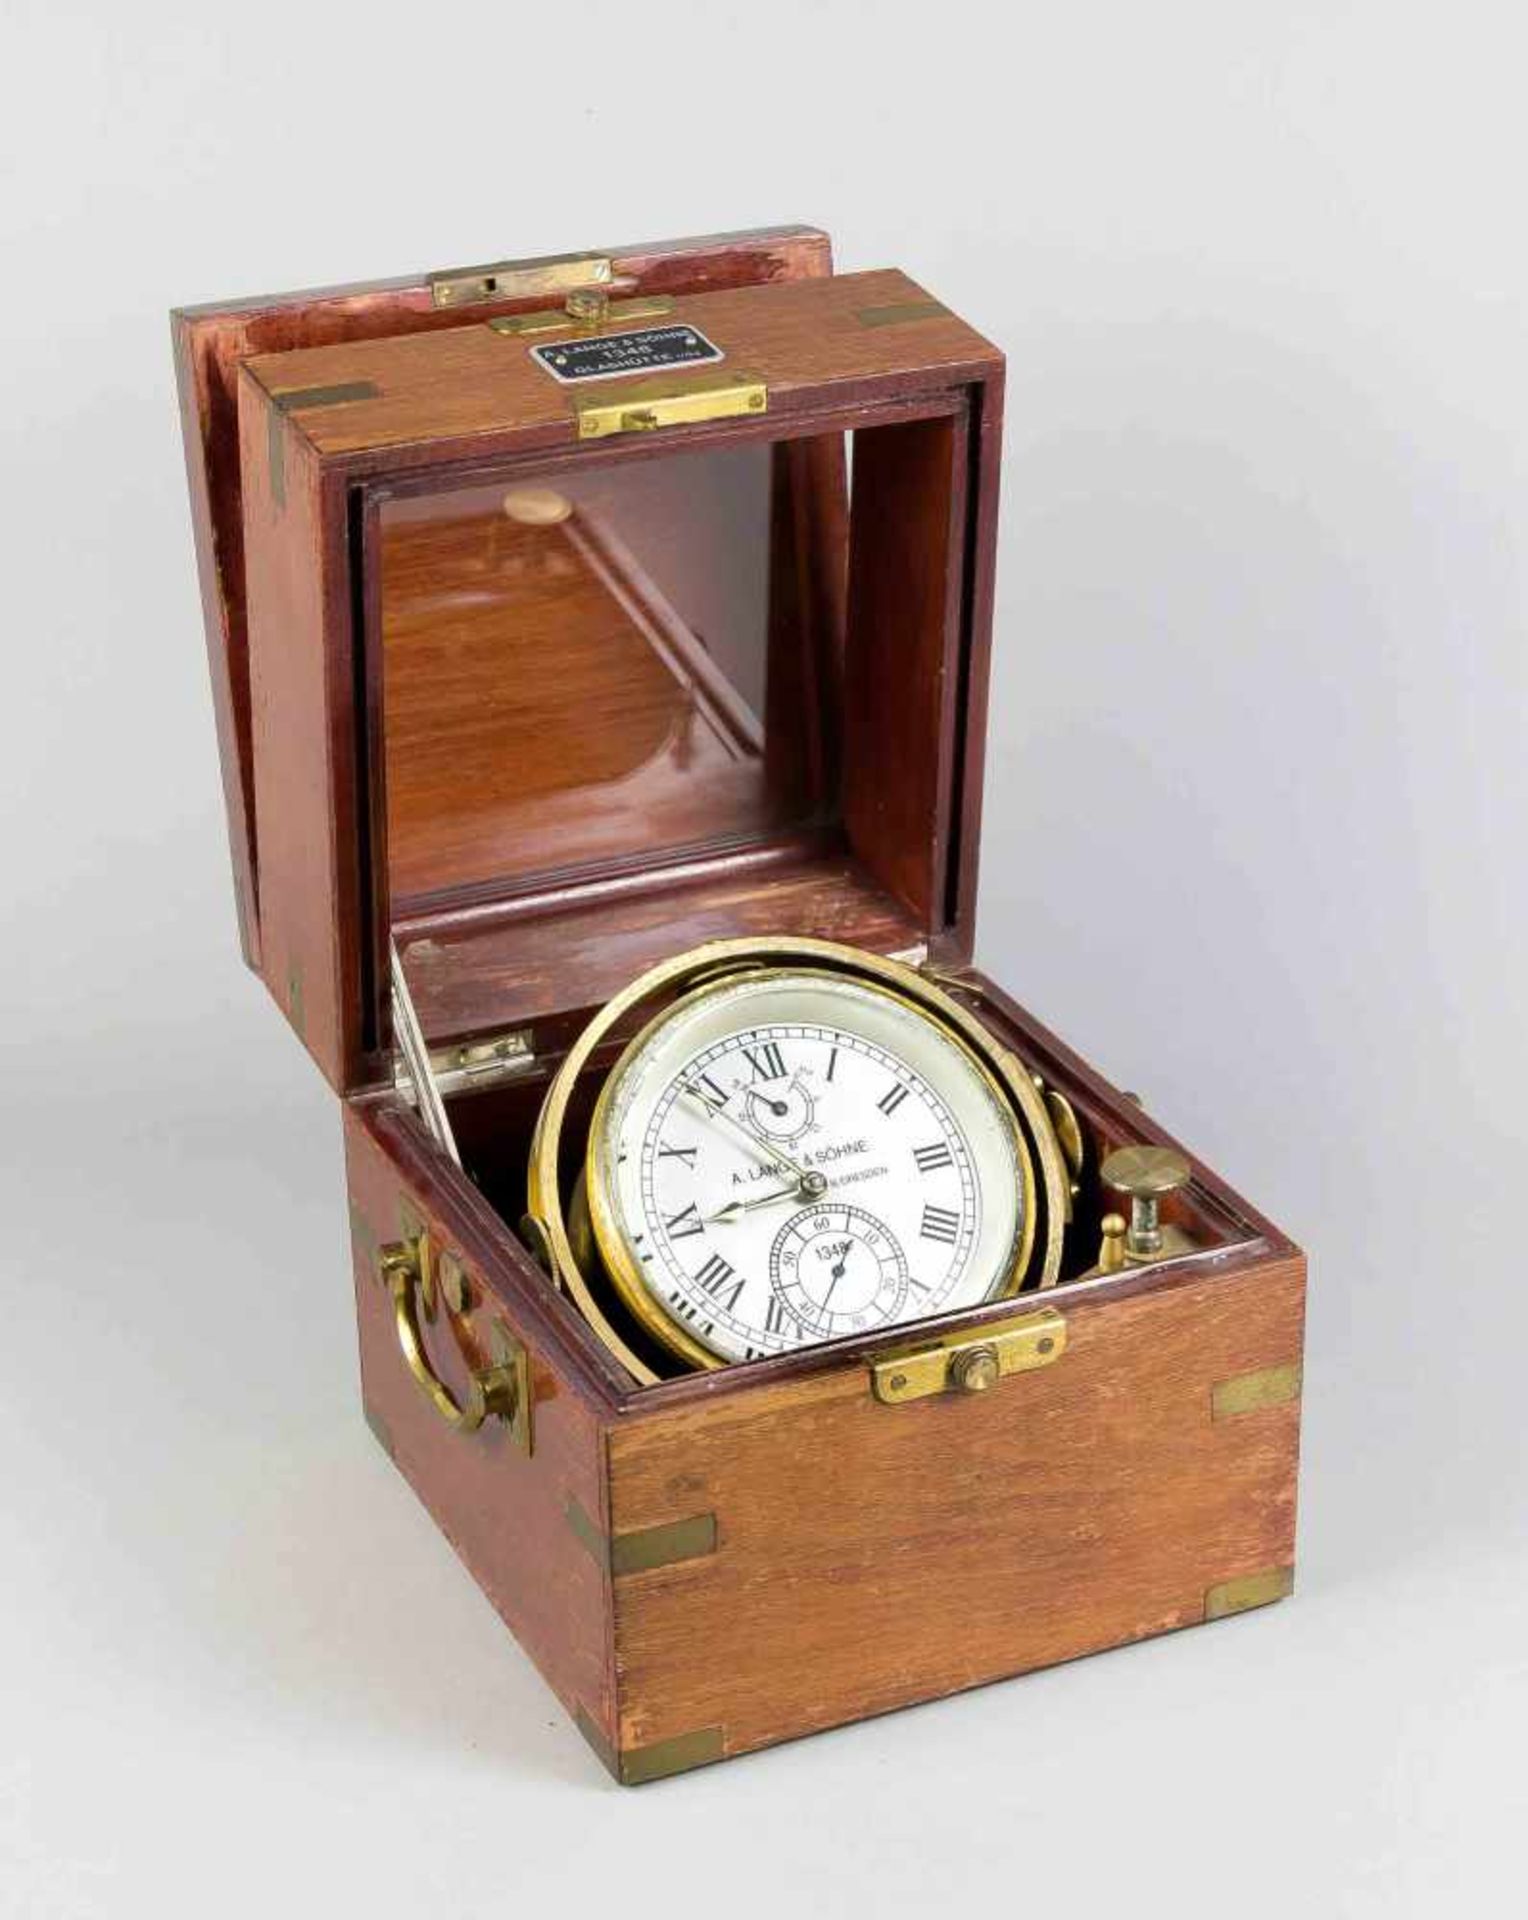 Marine-Chronometer. A. Lange & Söhne, Glashütte bei Dresden, 20. Jh. Schiffs-Chronometermit